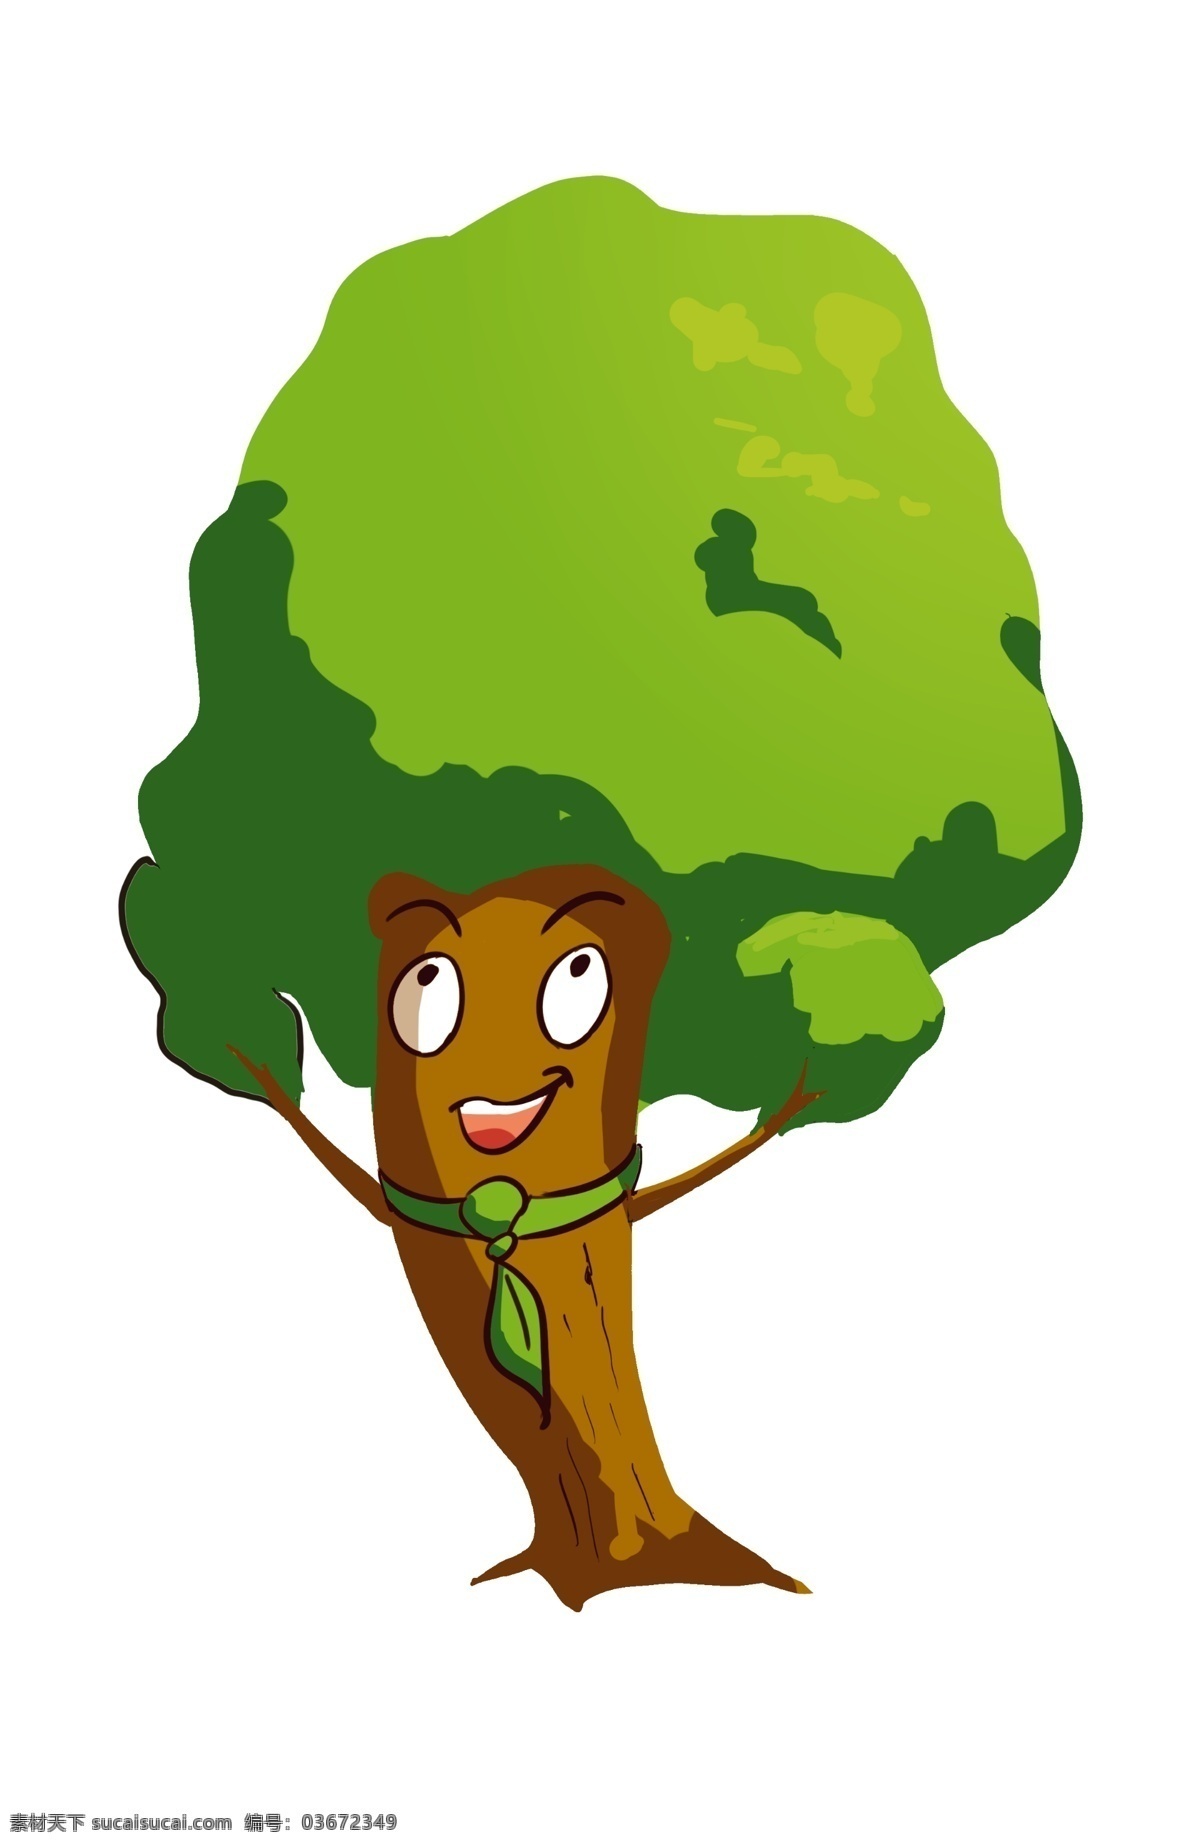 开心 大树 卡通 插画 开心的大树 卡通插画 大树插画 笑脸大树 植物插画 绿植插画 茂密的大树